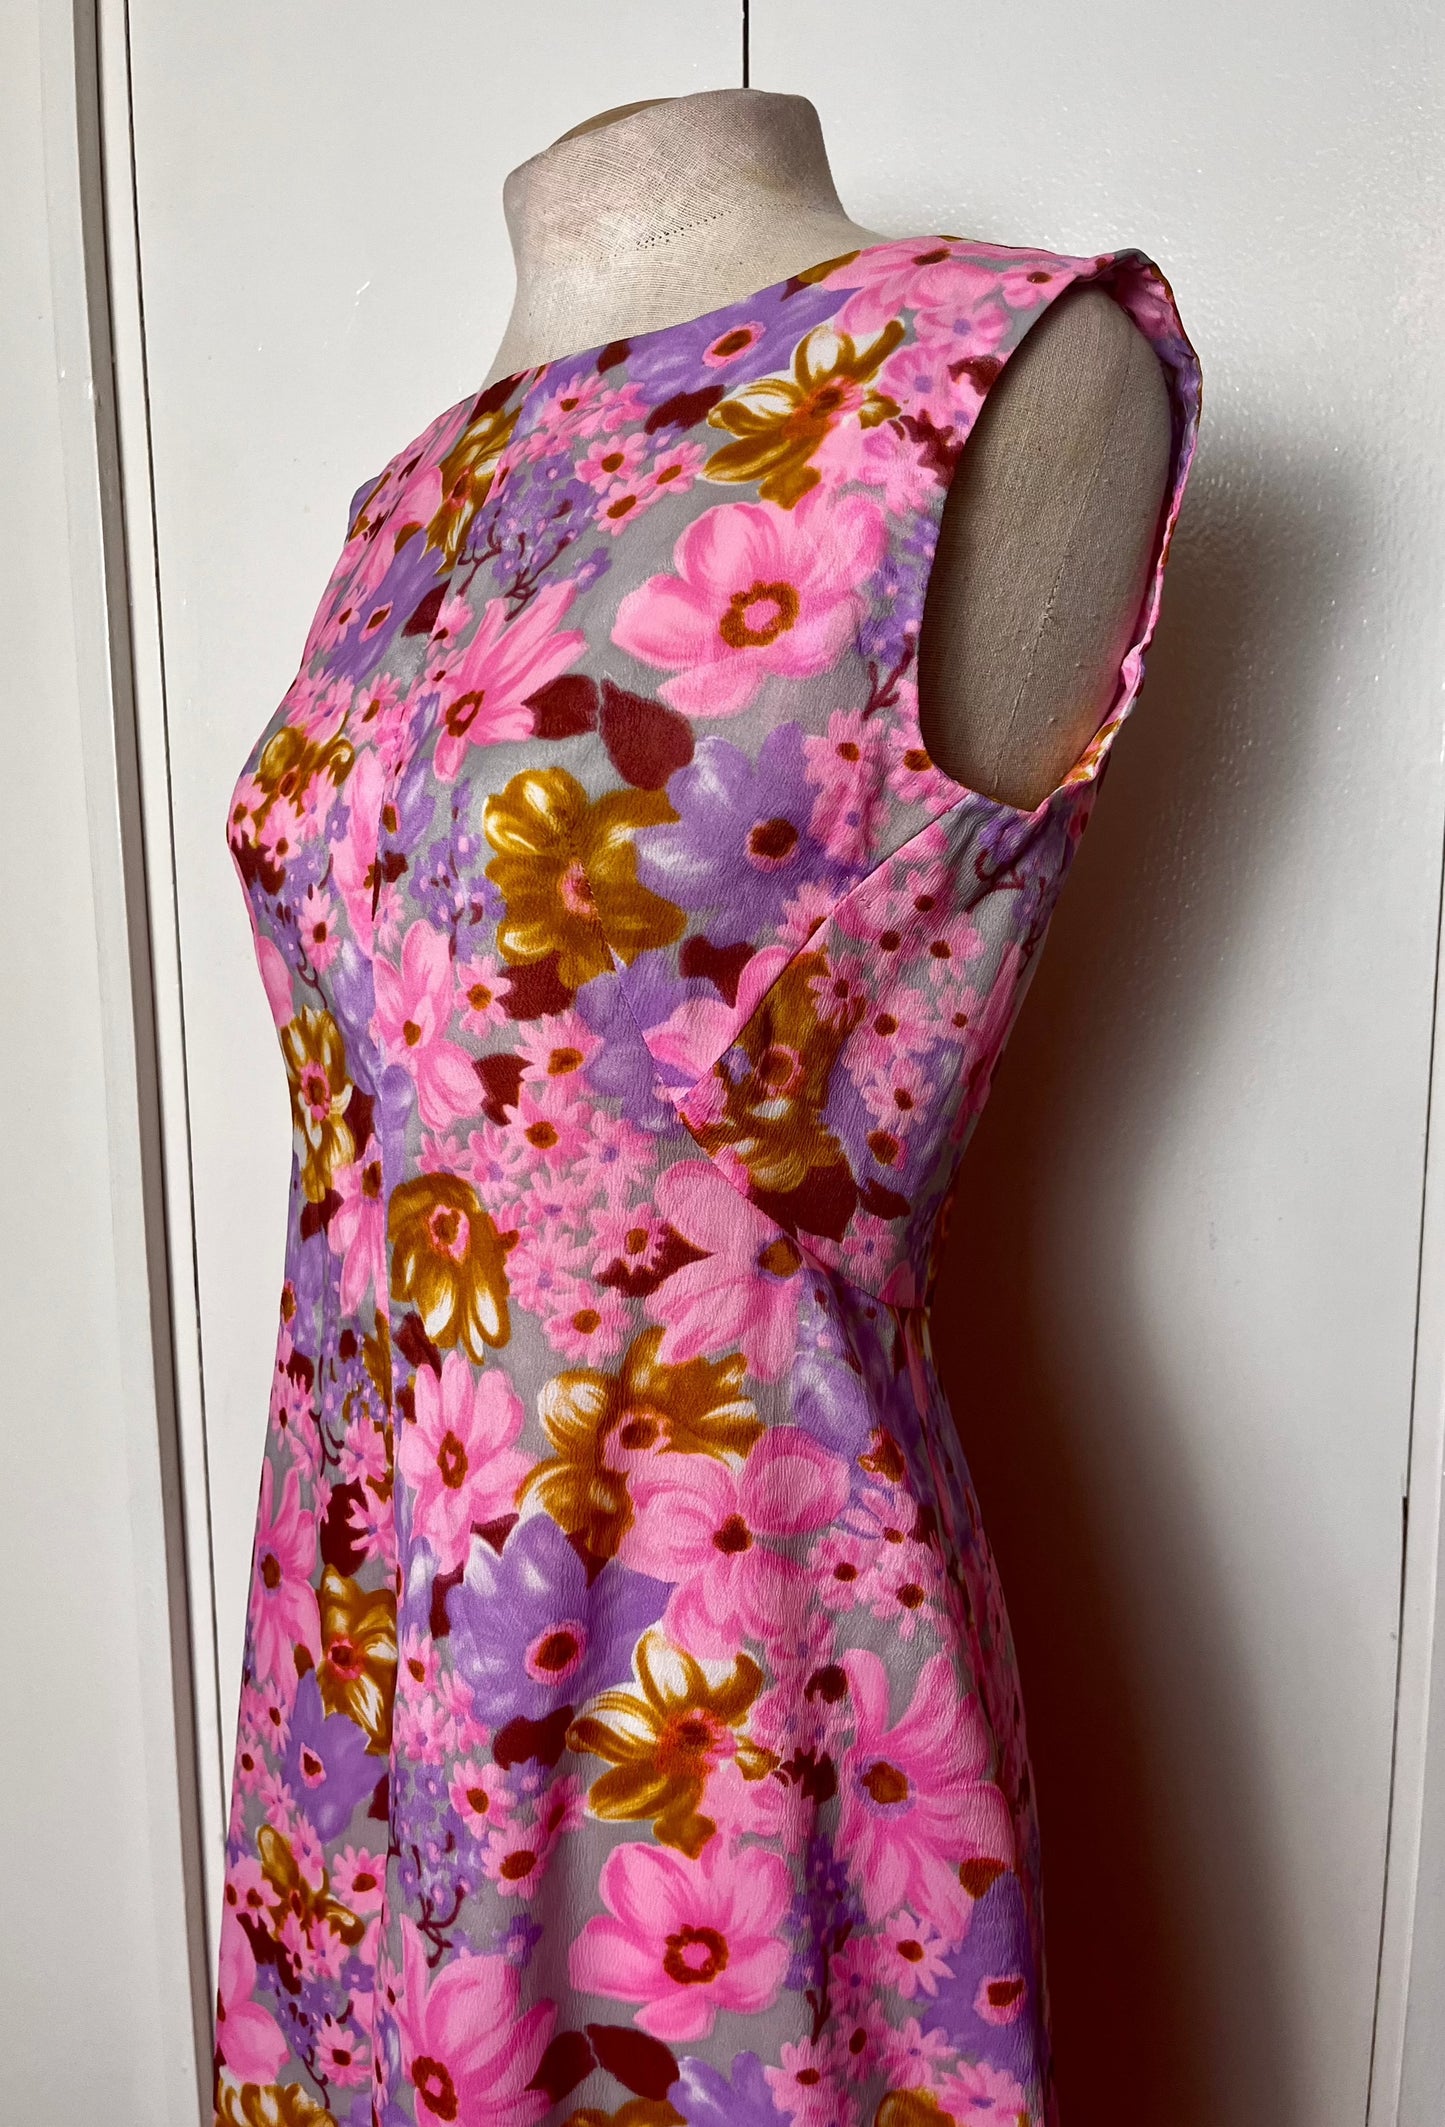 Vintage 1970's "Home-sewn" Pink Floral Dress